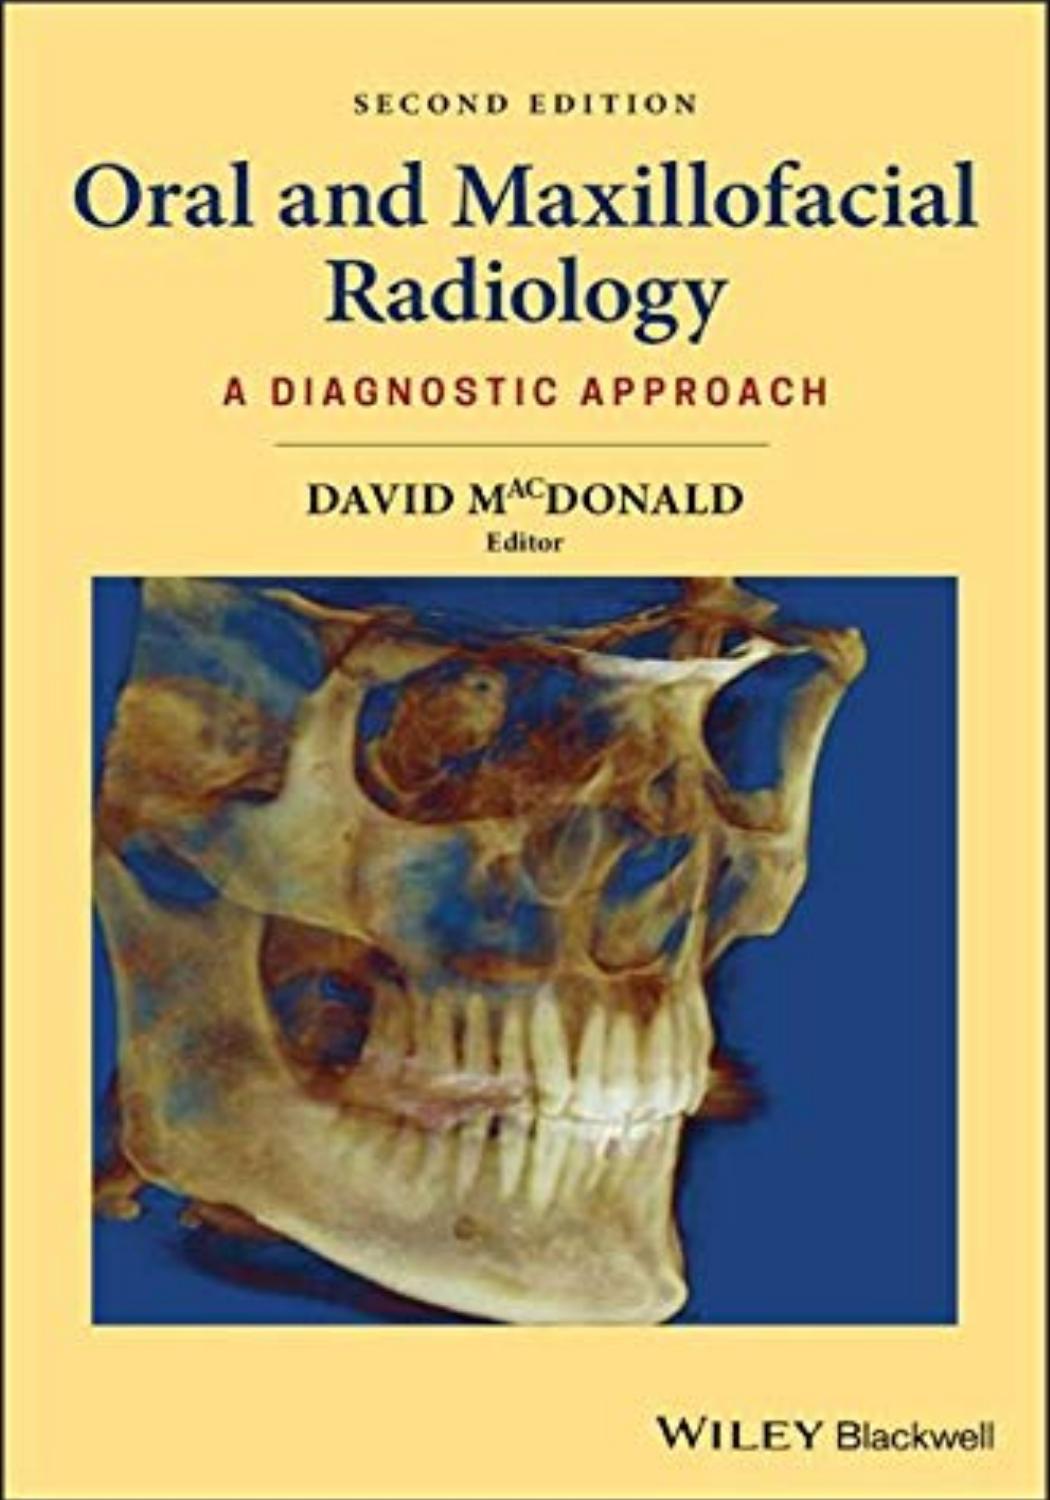 Oral and maxillofacial radiology a diagnostic approach by MacDonald, David (z-lib.org)